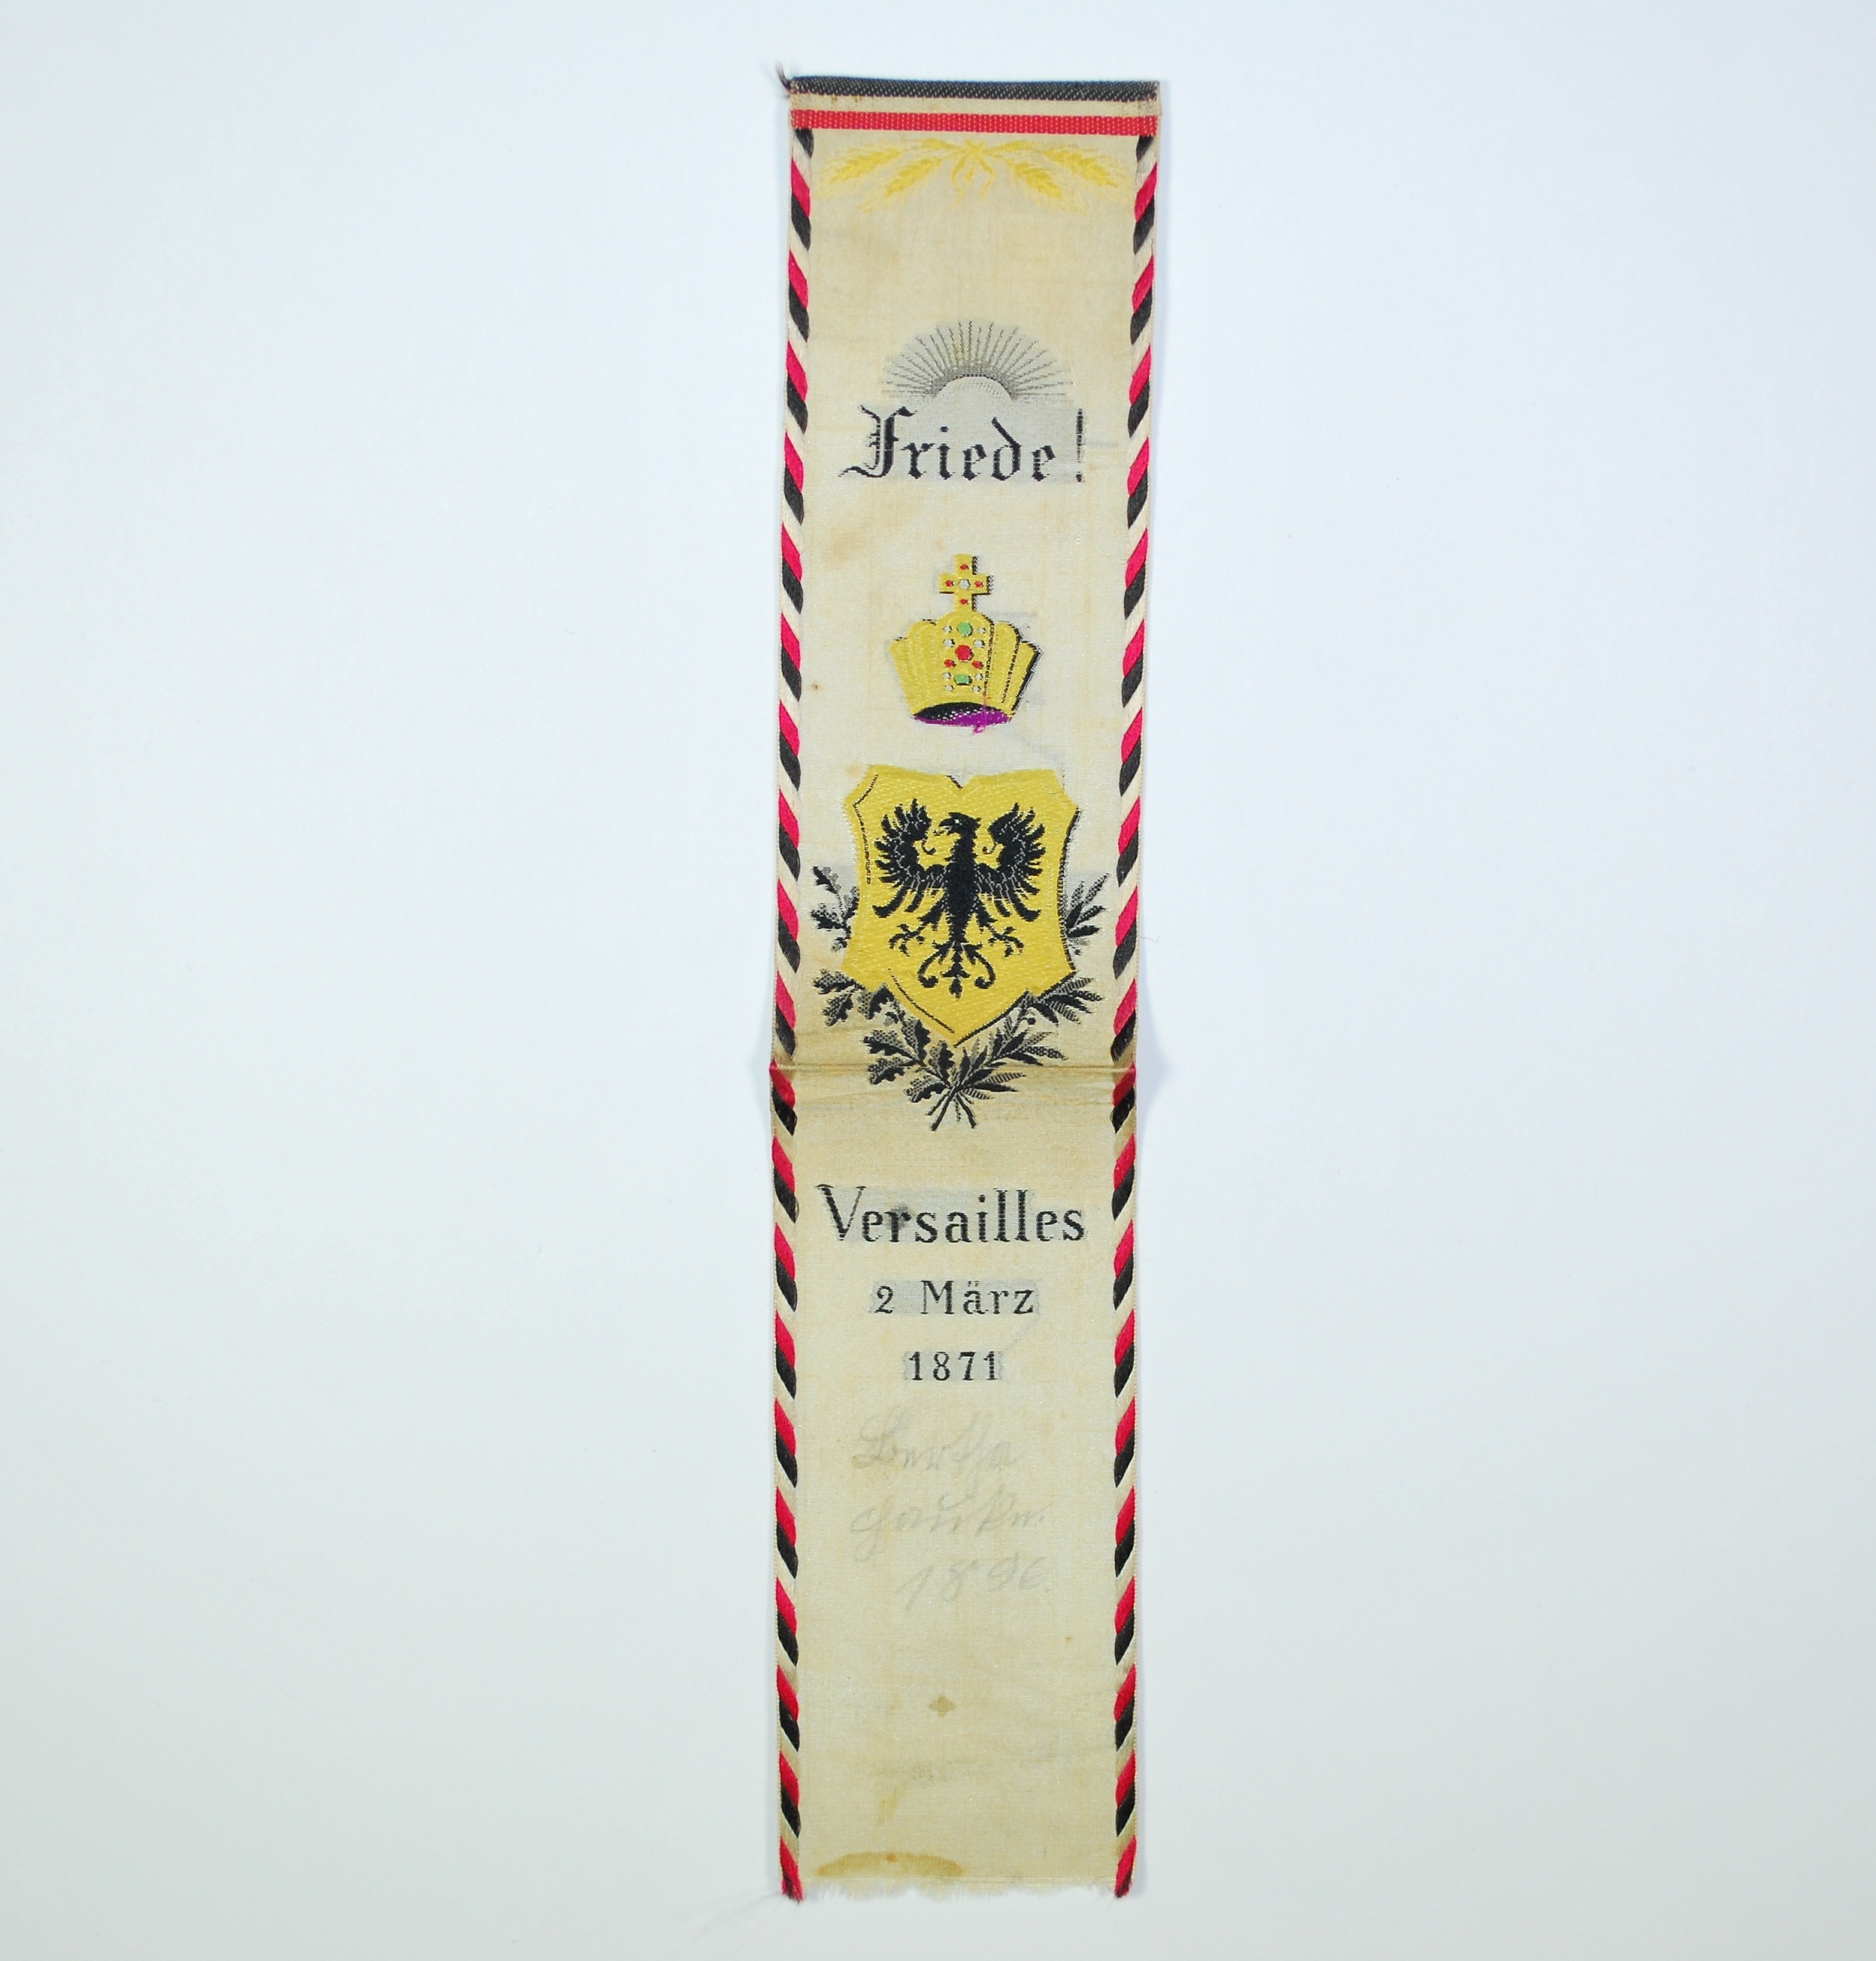 Vivatband - Friede von Versailles 1871 (Kulturhistorisches Museum Schloss Merseburg CC BY-NC-SA)